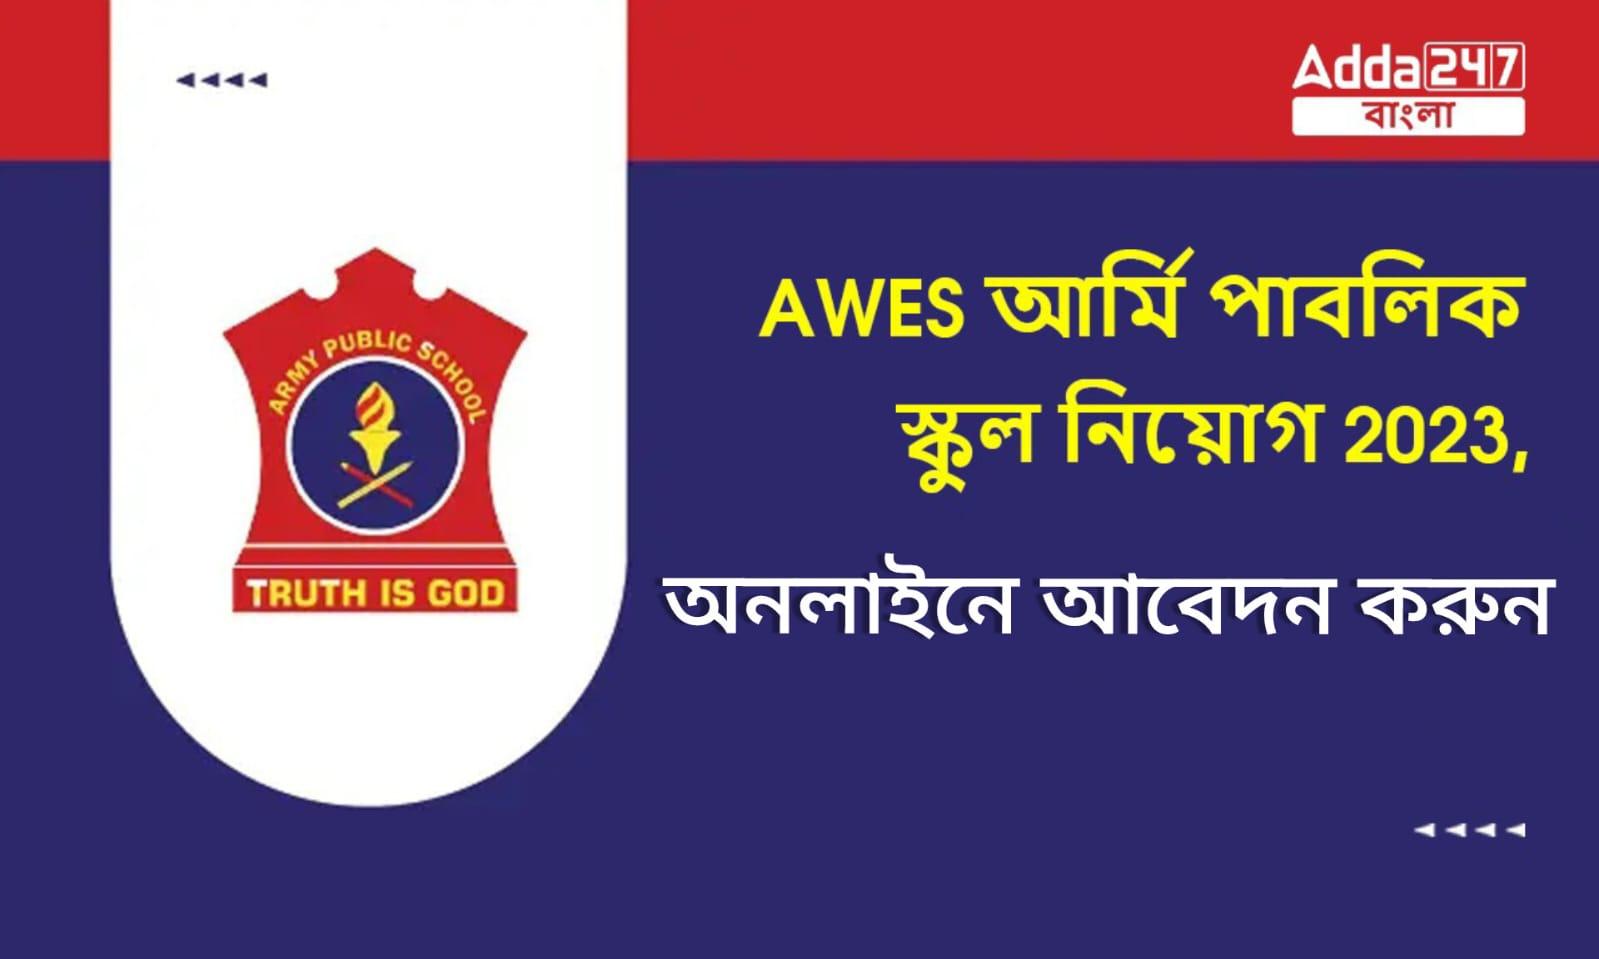 AWES আর্মি পাবলিক স্কুল নিয়োগ 2023